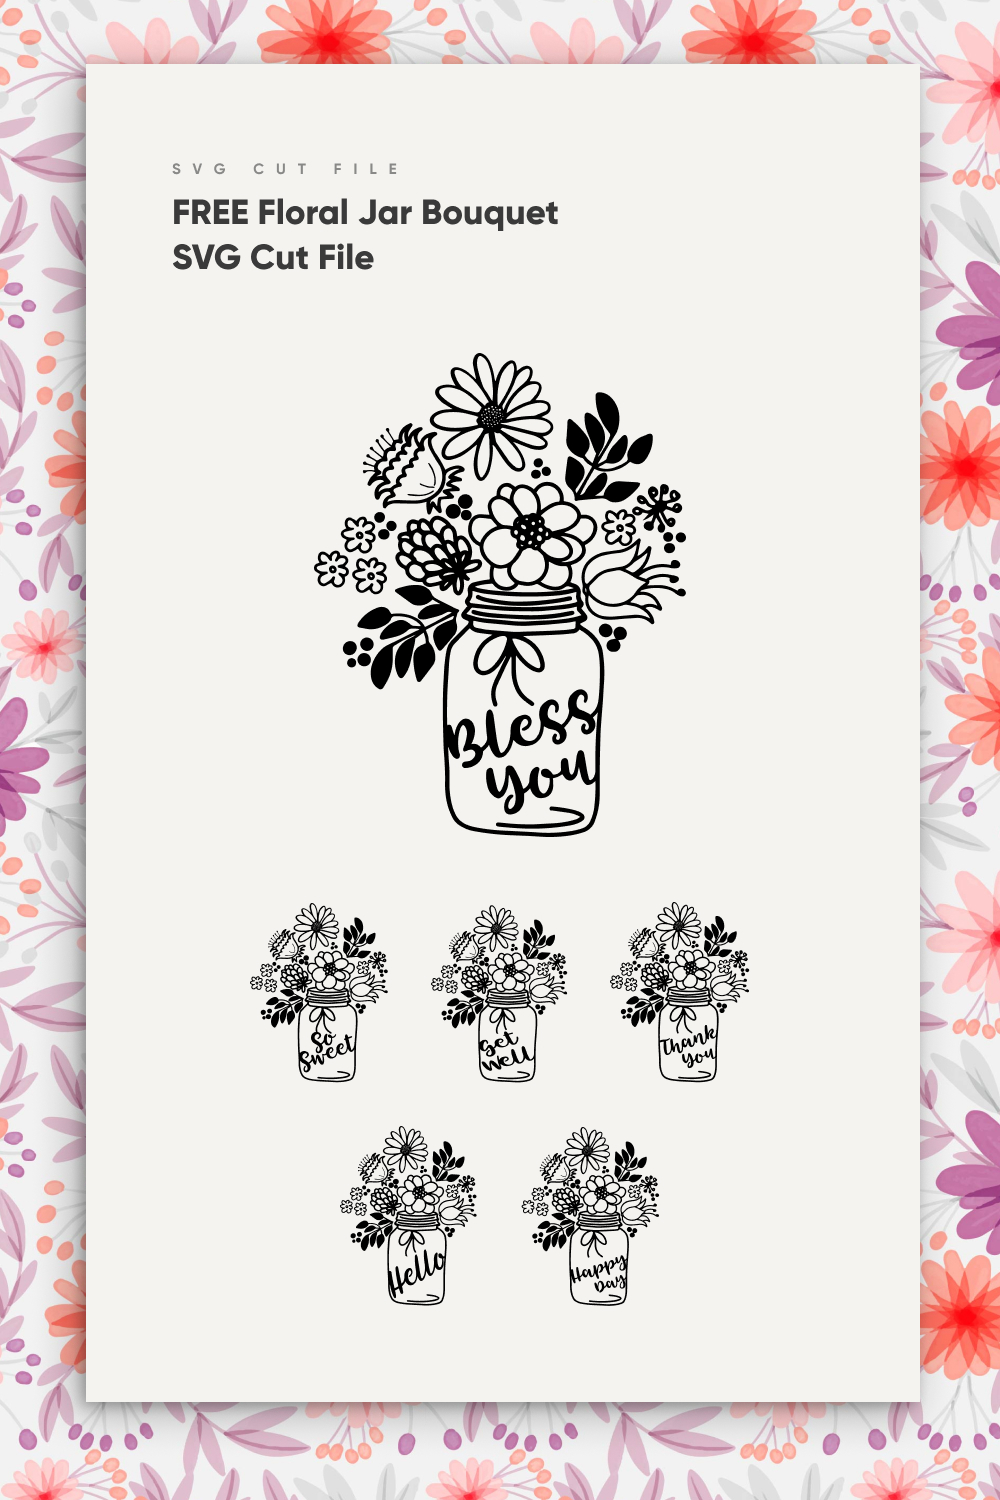 FREE Floral Jar Bouquet SVG Cut File pinterest.